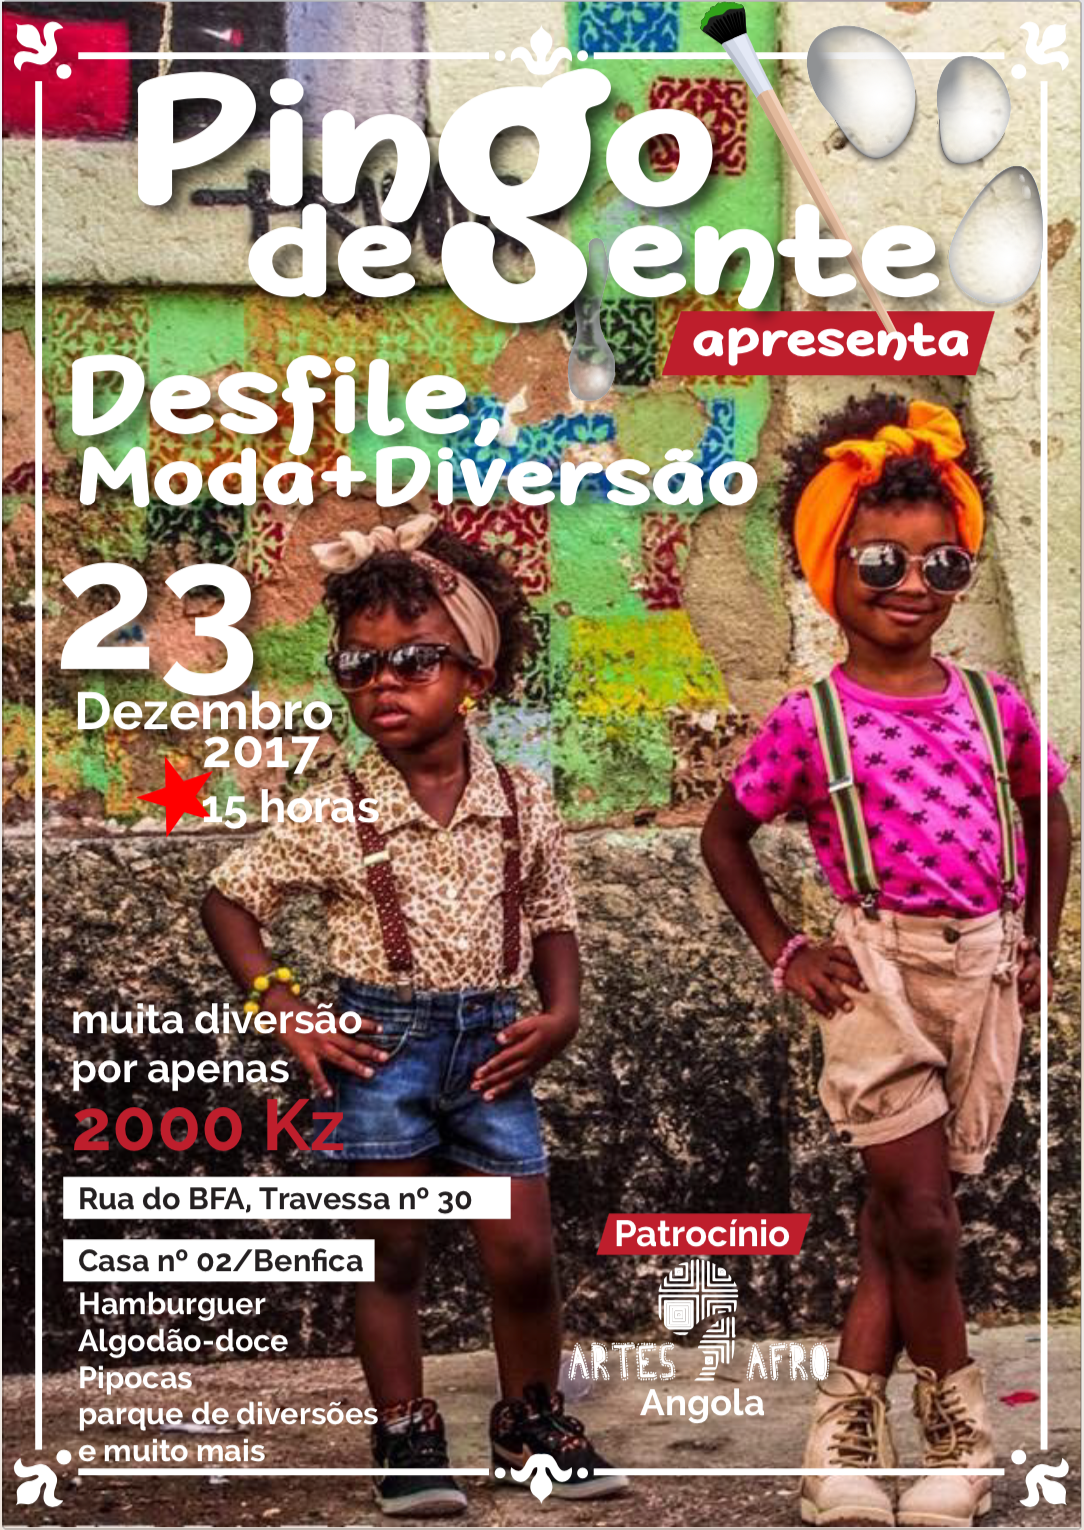 Campanhas de divulgação sport flyer Dino Cross design angola Luanda cover magazine